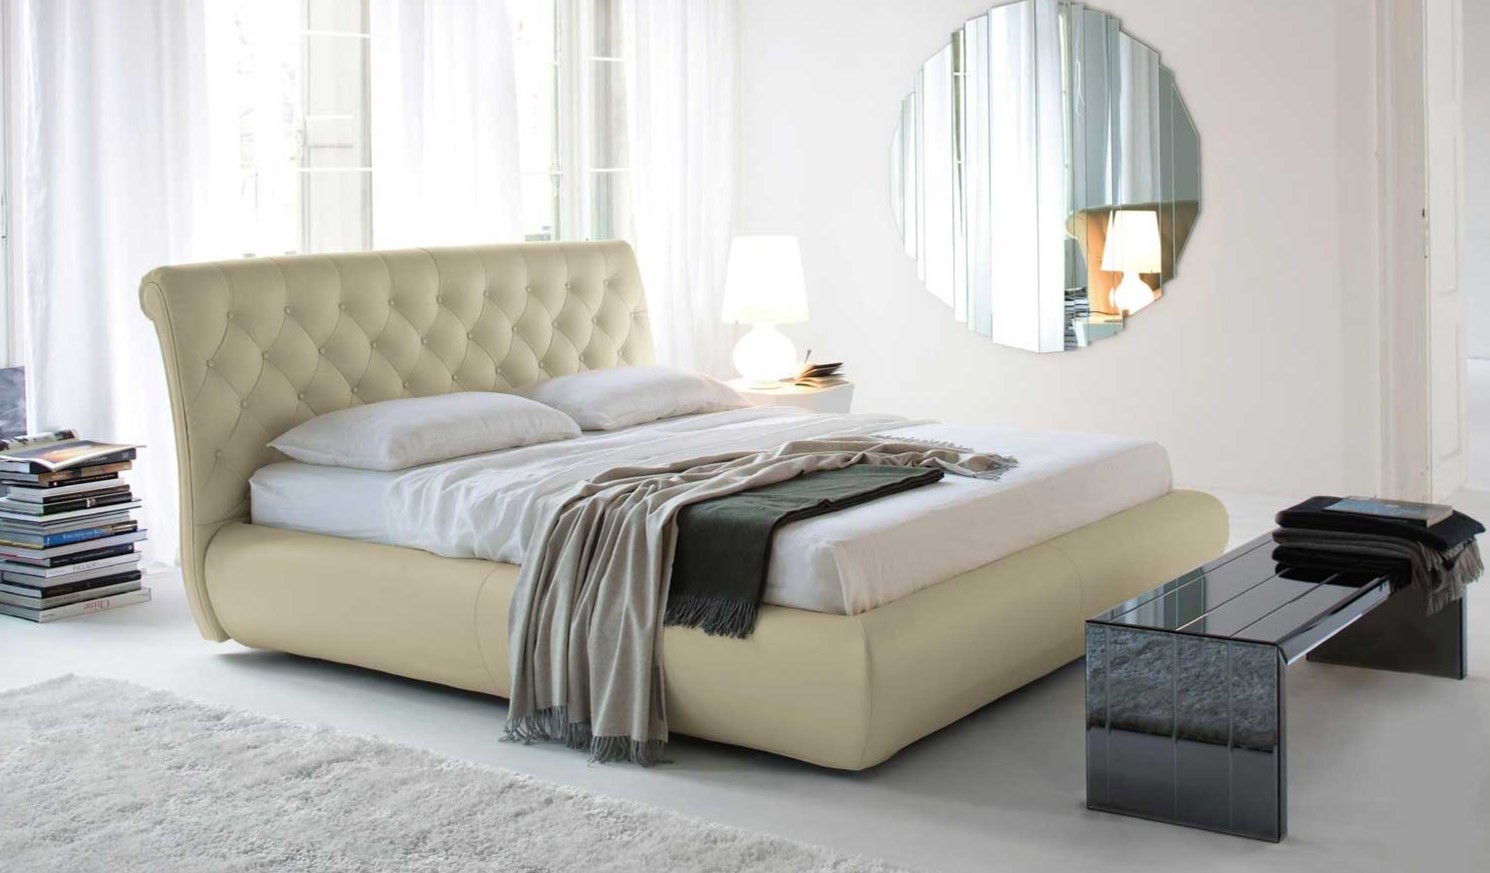 Бежевая кровать с мягкой обивкой создает атмосферу уюта в спальне